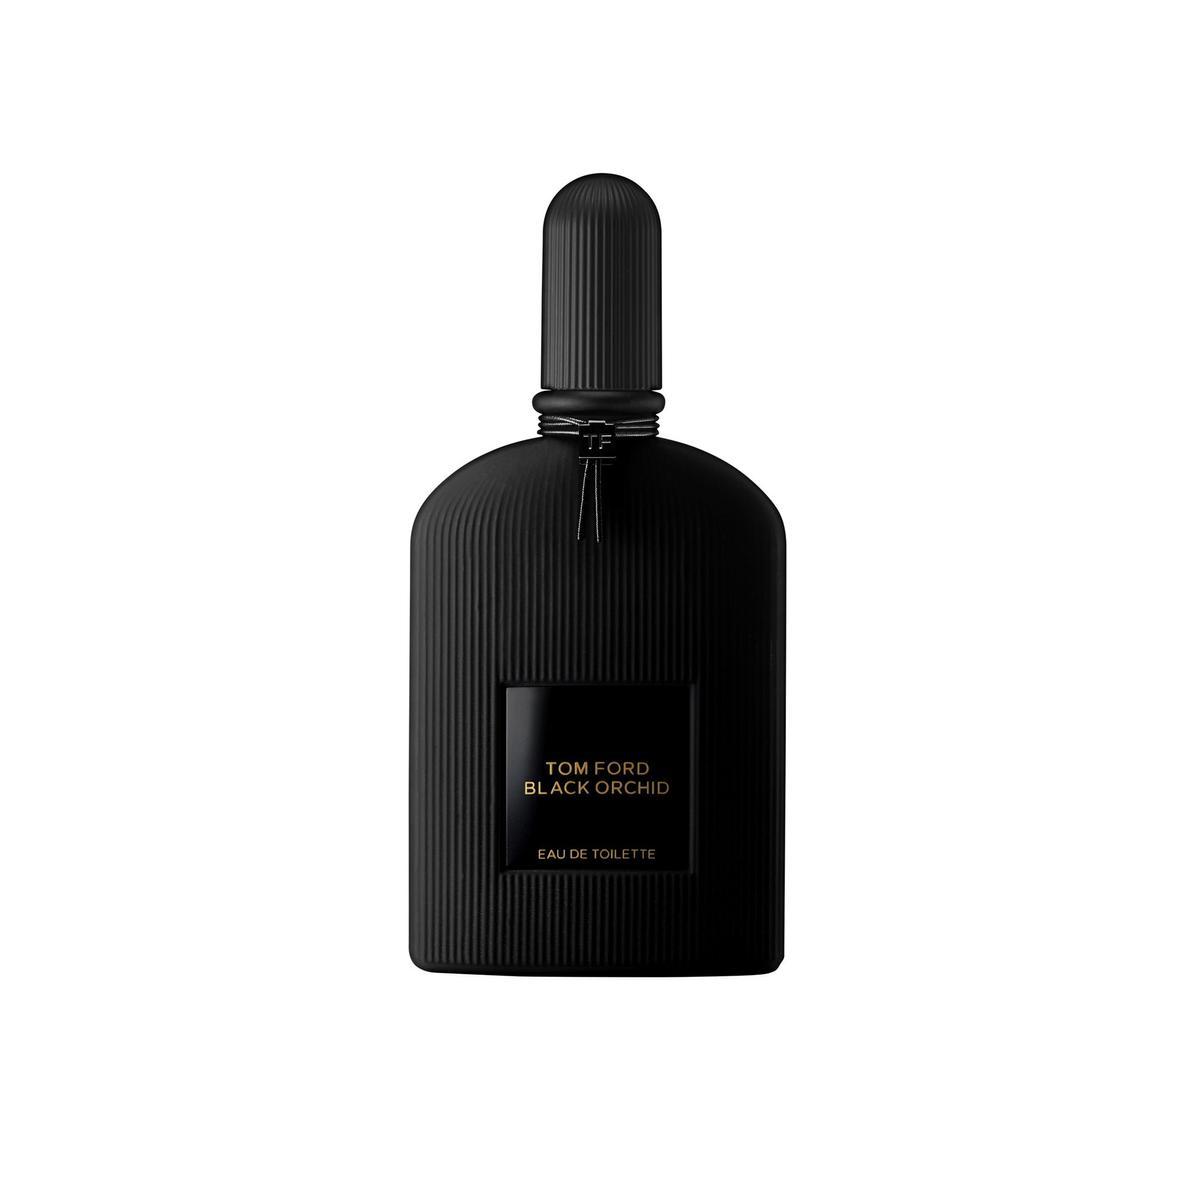 Premio Perfume Nicho Femenino: Black Orchid, de Tom Ford